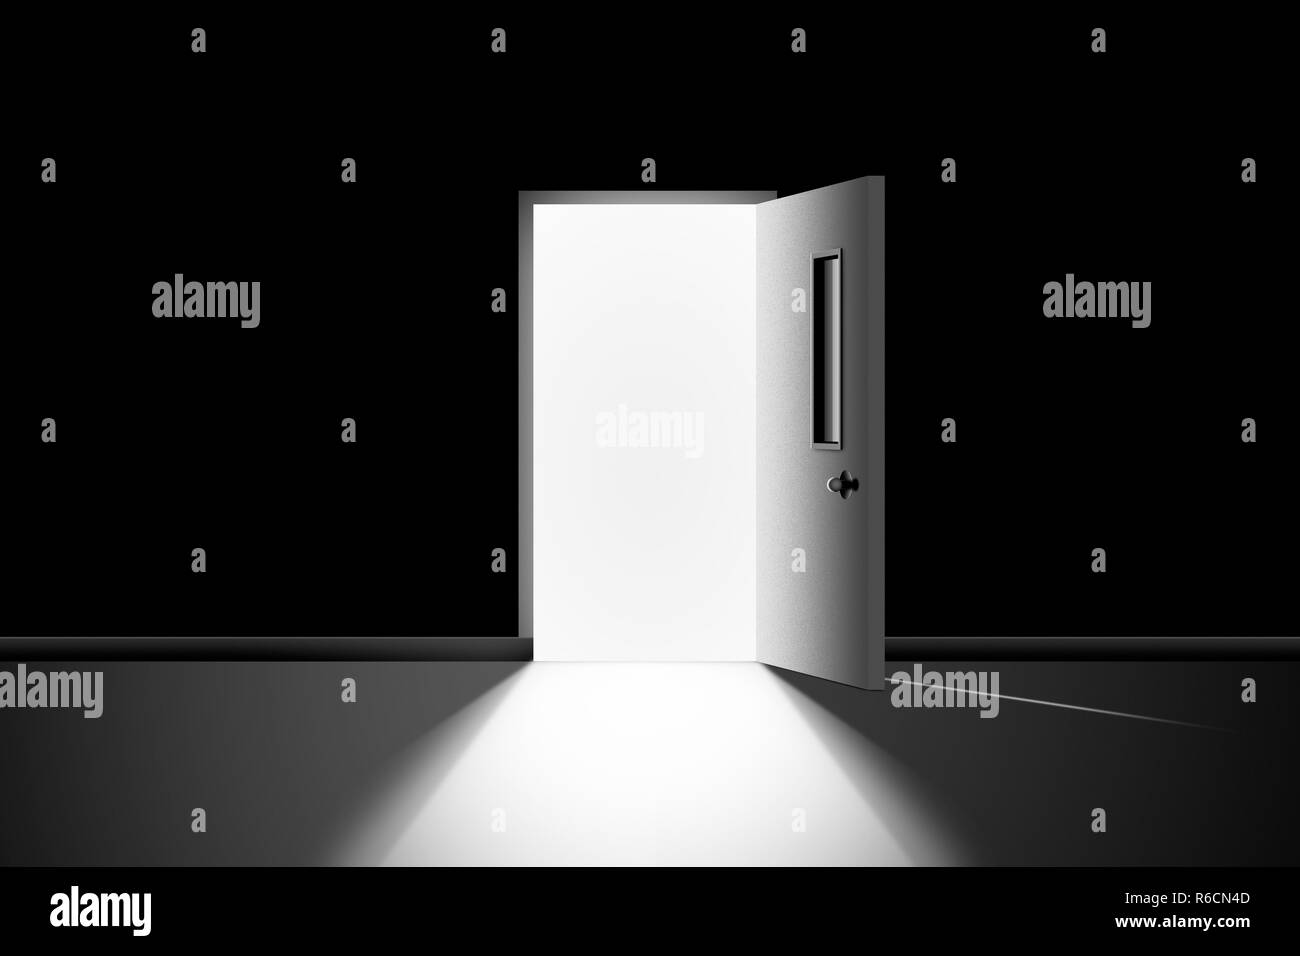 Imagen digital en blanco y negro de la puerta abierta en una habitación oscura conduce a brillante luz cegadora. Foto de stock